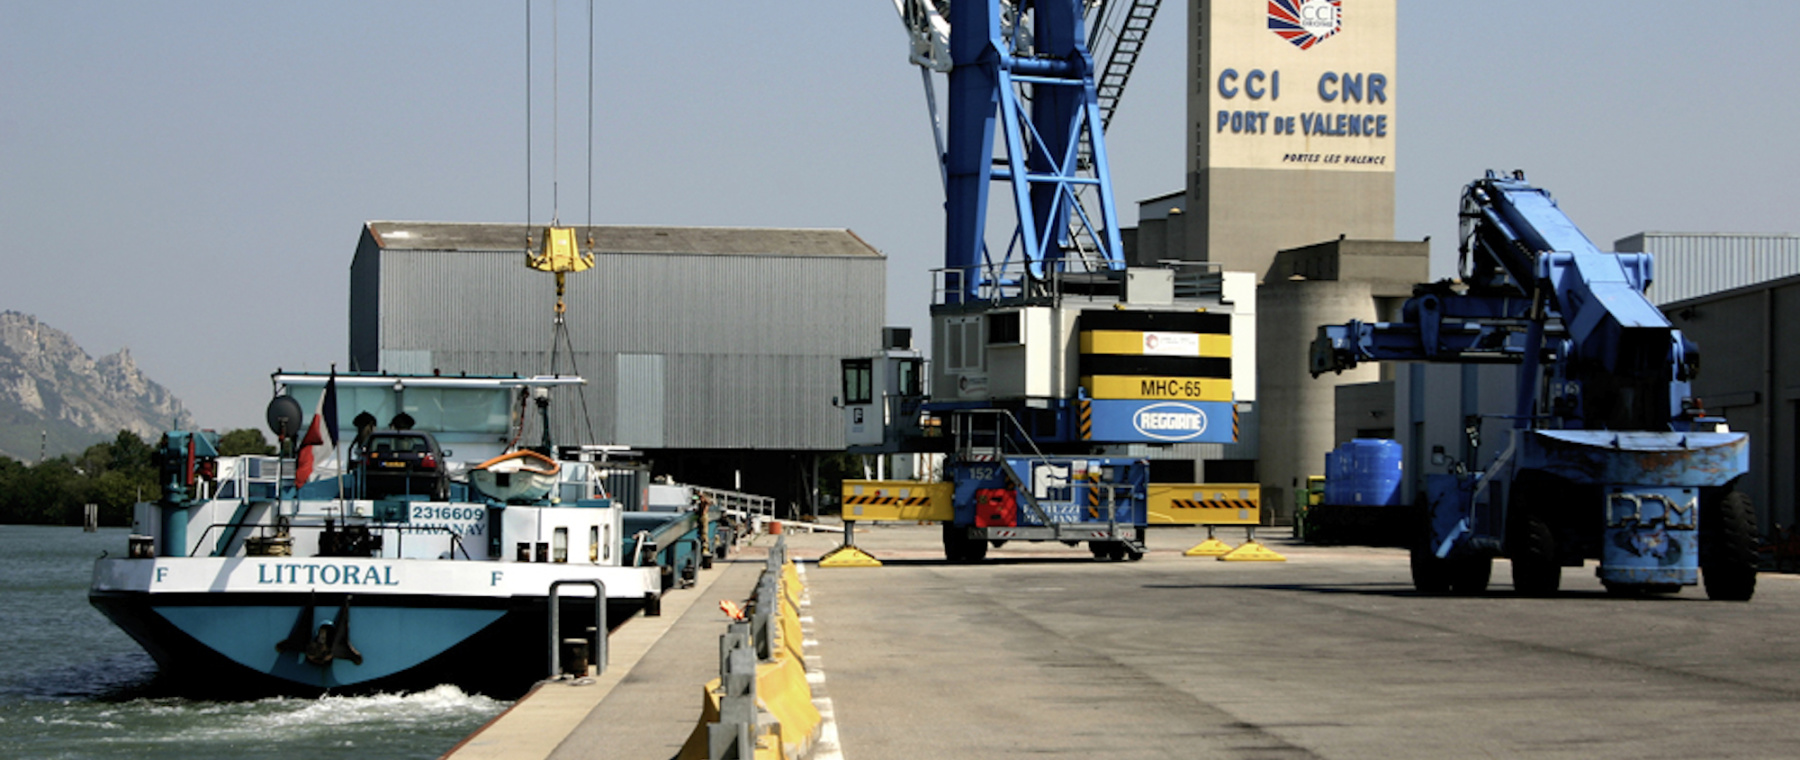 Conteneurs au Port de commerce © Chambre de Commerce et d industrie de la Drome